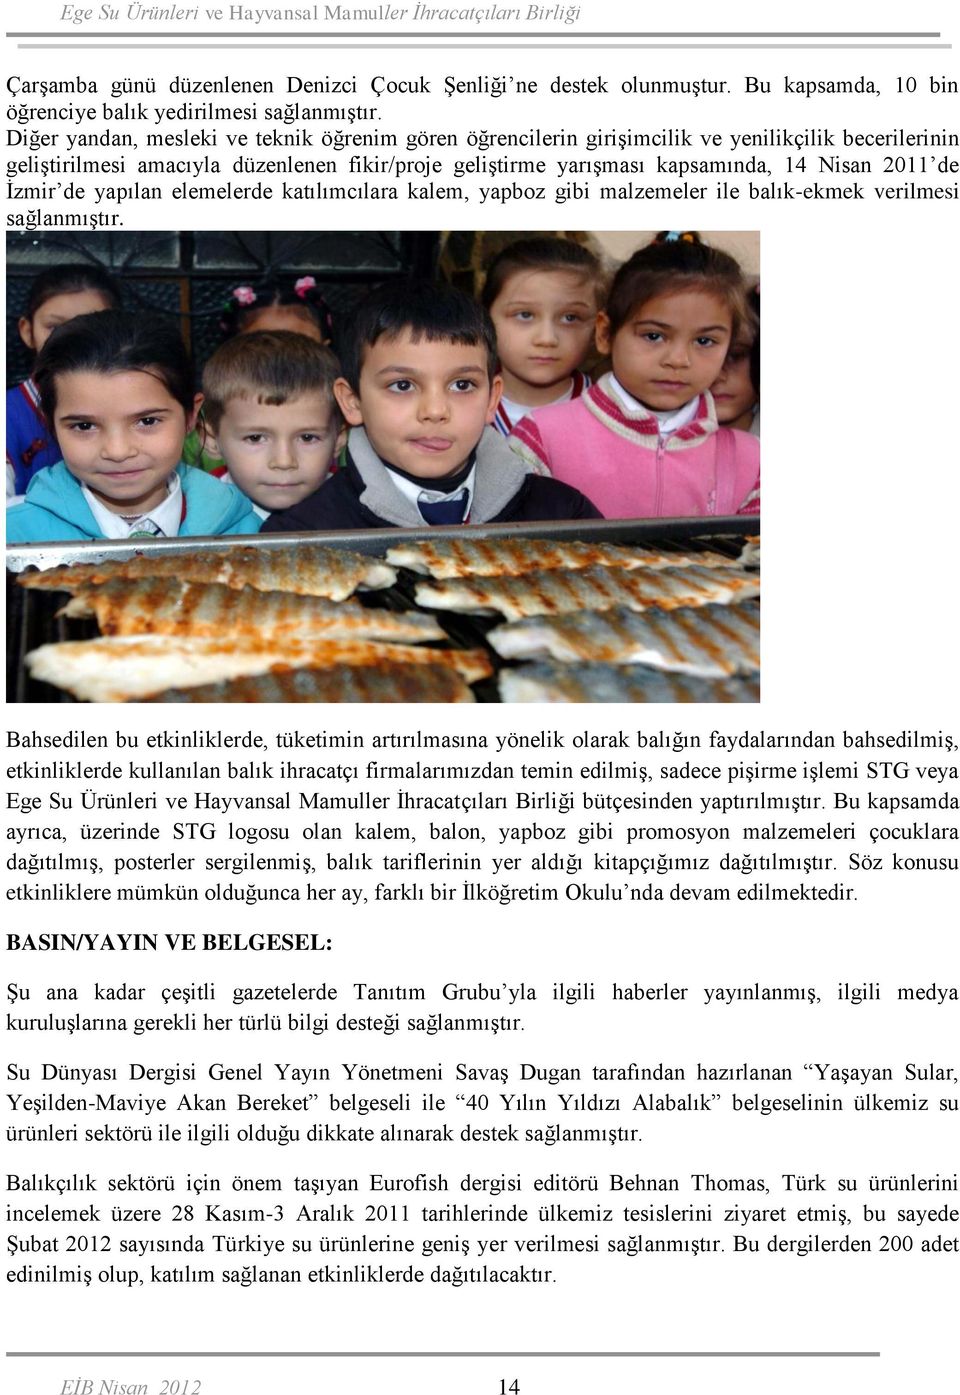 İzmir de yapılan elemelerde katılımcılara kalem, yapboz gibi malzemeler ile balık-ekmek verilmesi sağlanmıştır.